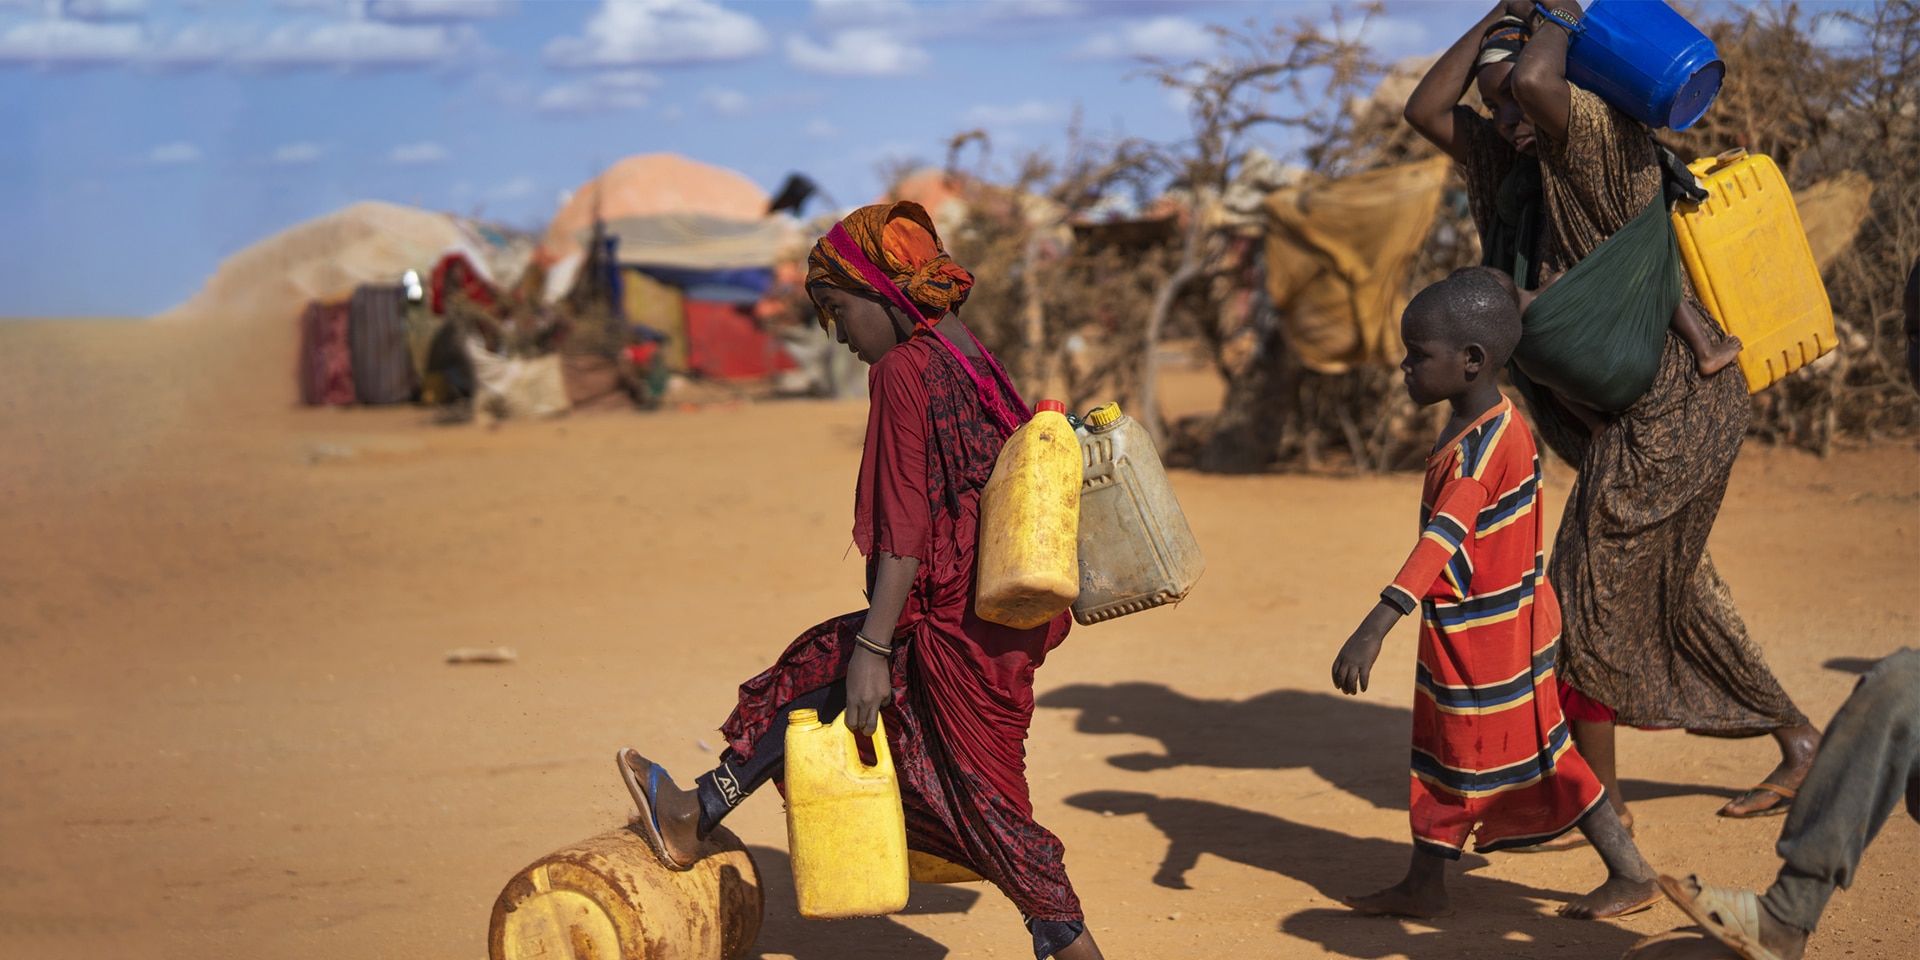 Frauen und Kinder transportierten Wasser-Kanister durch ein Dorf mit einfachen Hütten in Somalia.